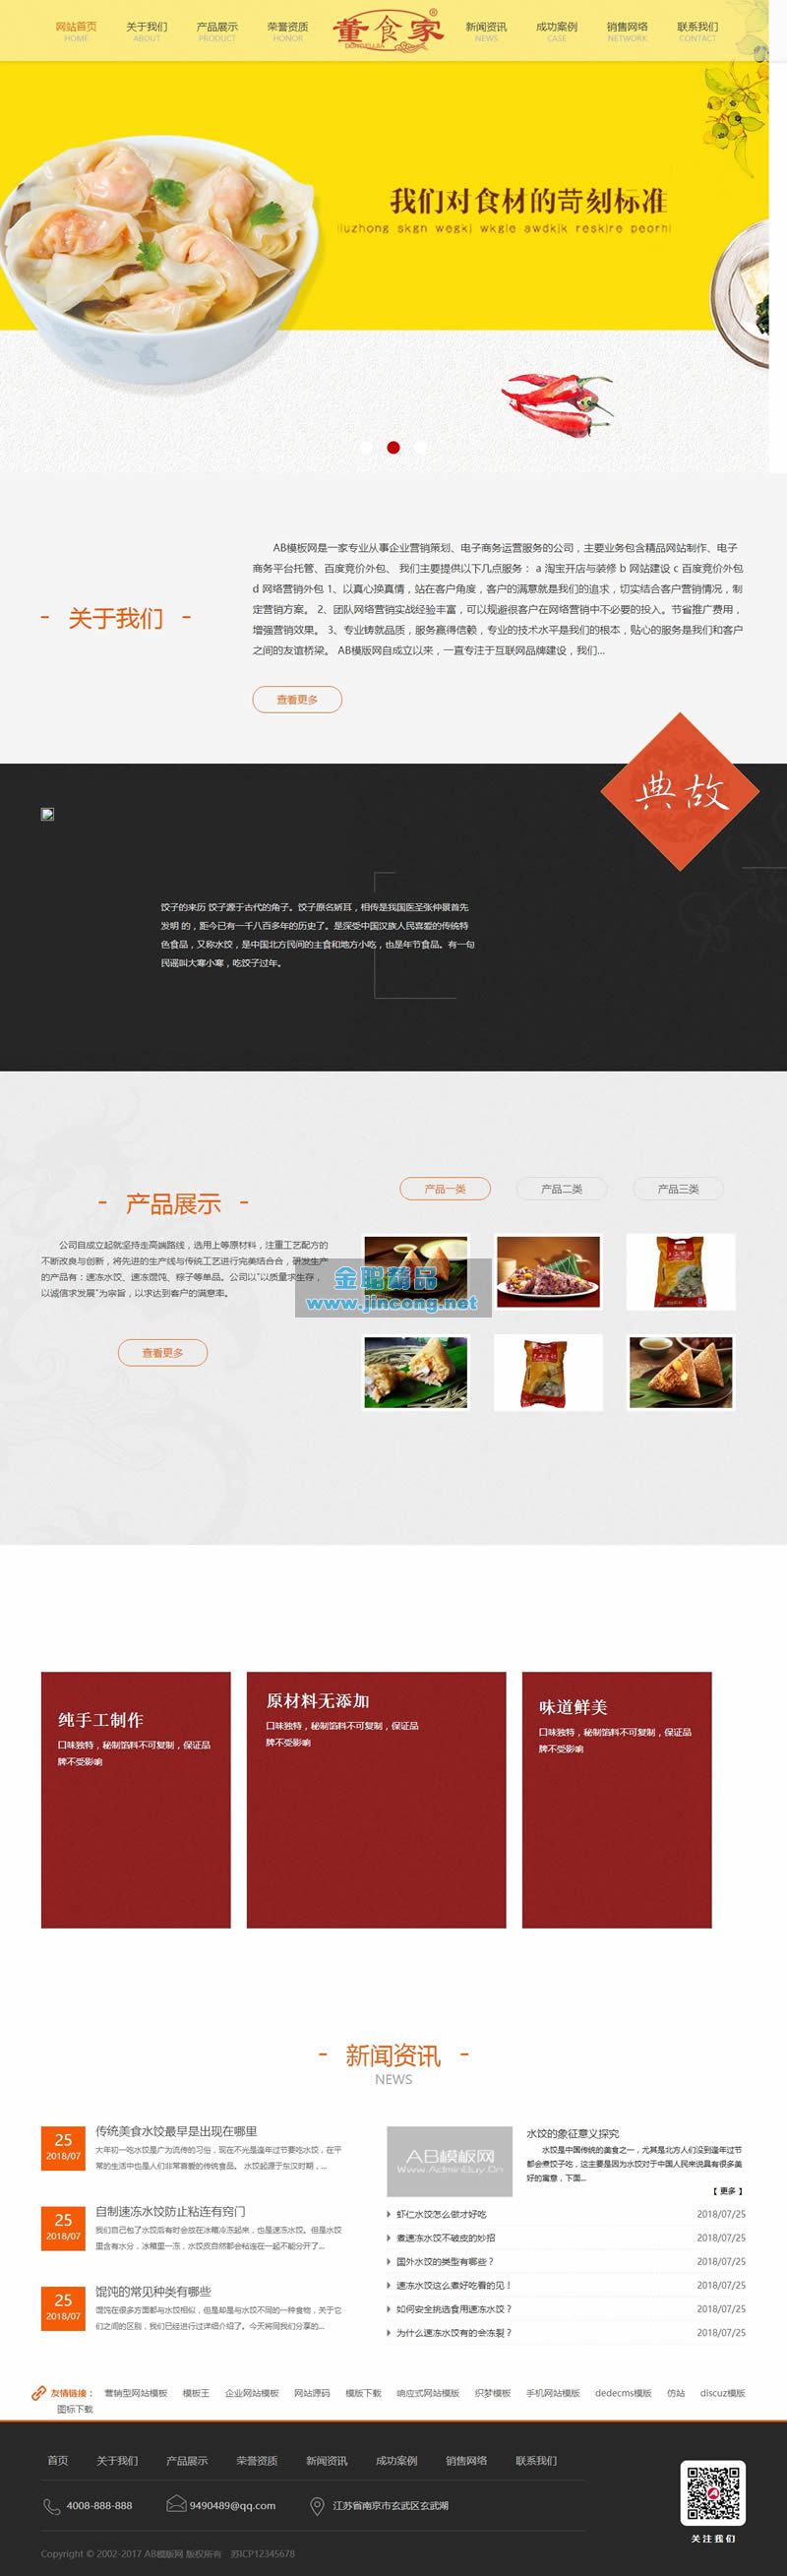 速冻食品生产加工类网站源码 冷冻水饺食品织梦模板